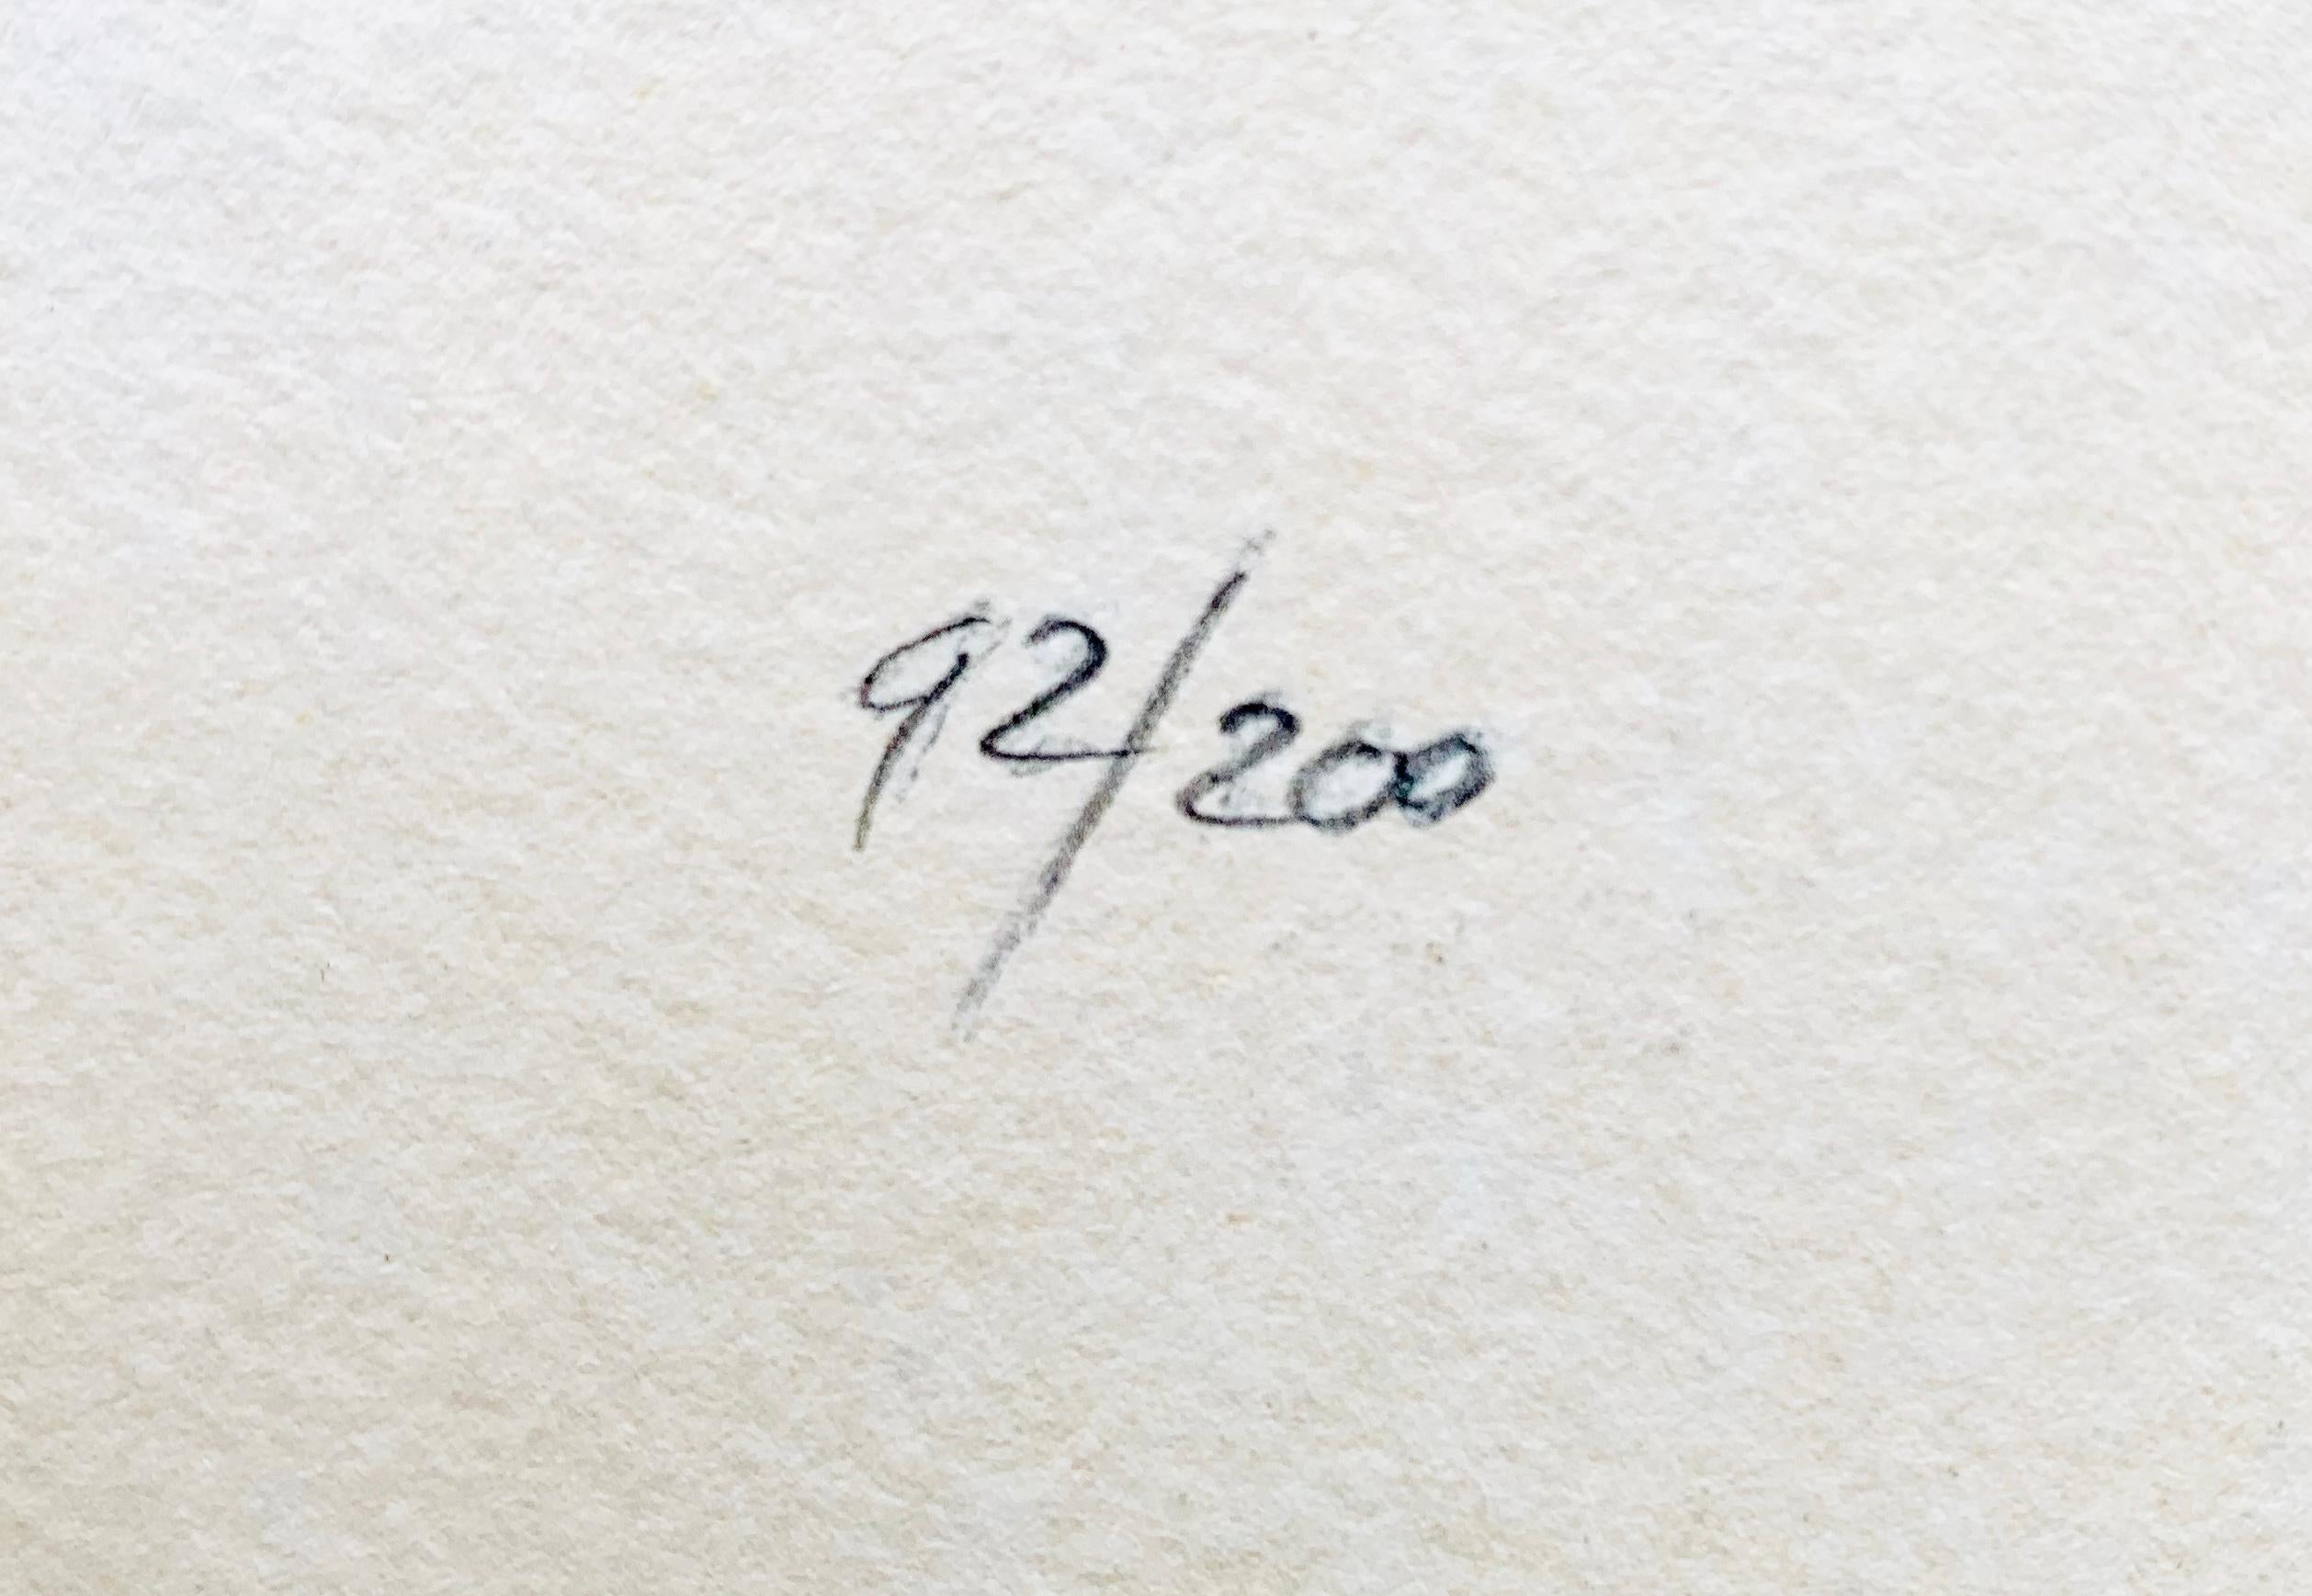 Kees van Dongen- Marcelle Leoni
Lithographie, sur papier Arches (avec filigrane), 1959.
Edition : 200
Signé au stylo à bille, numéroté 92/200 au crayon (au verso)
Imprimé par Mourlot, Paris
Taille du papier : 68,0 x 47,2 cm.
Très bon exemplaire de